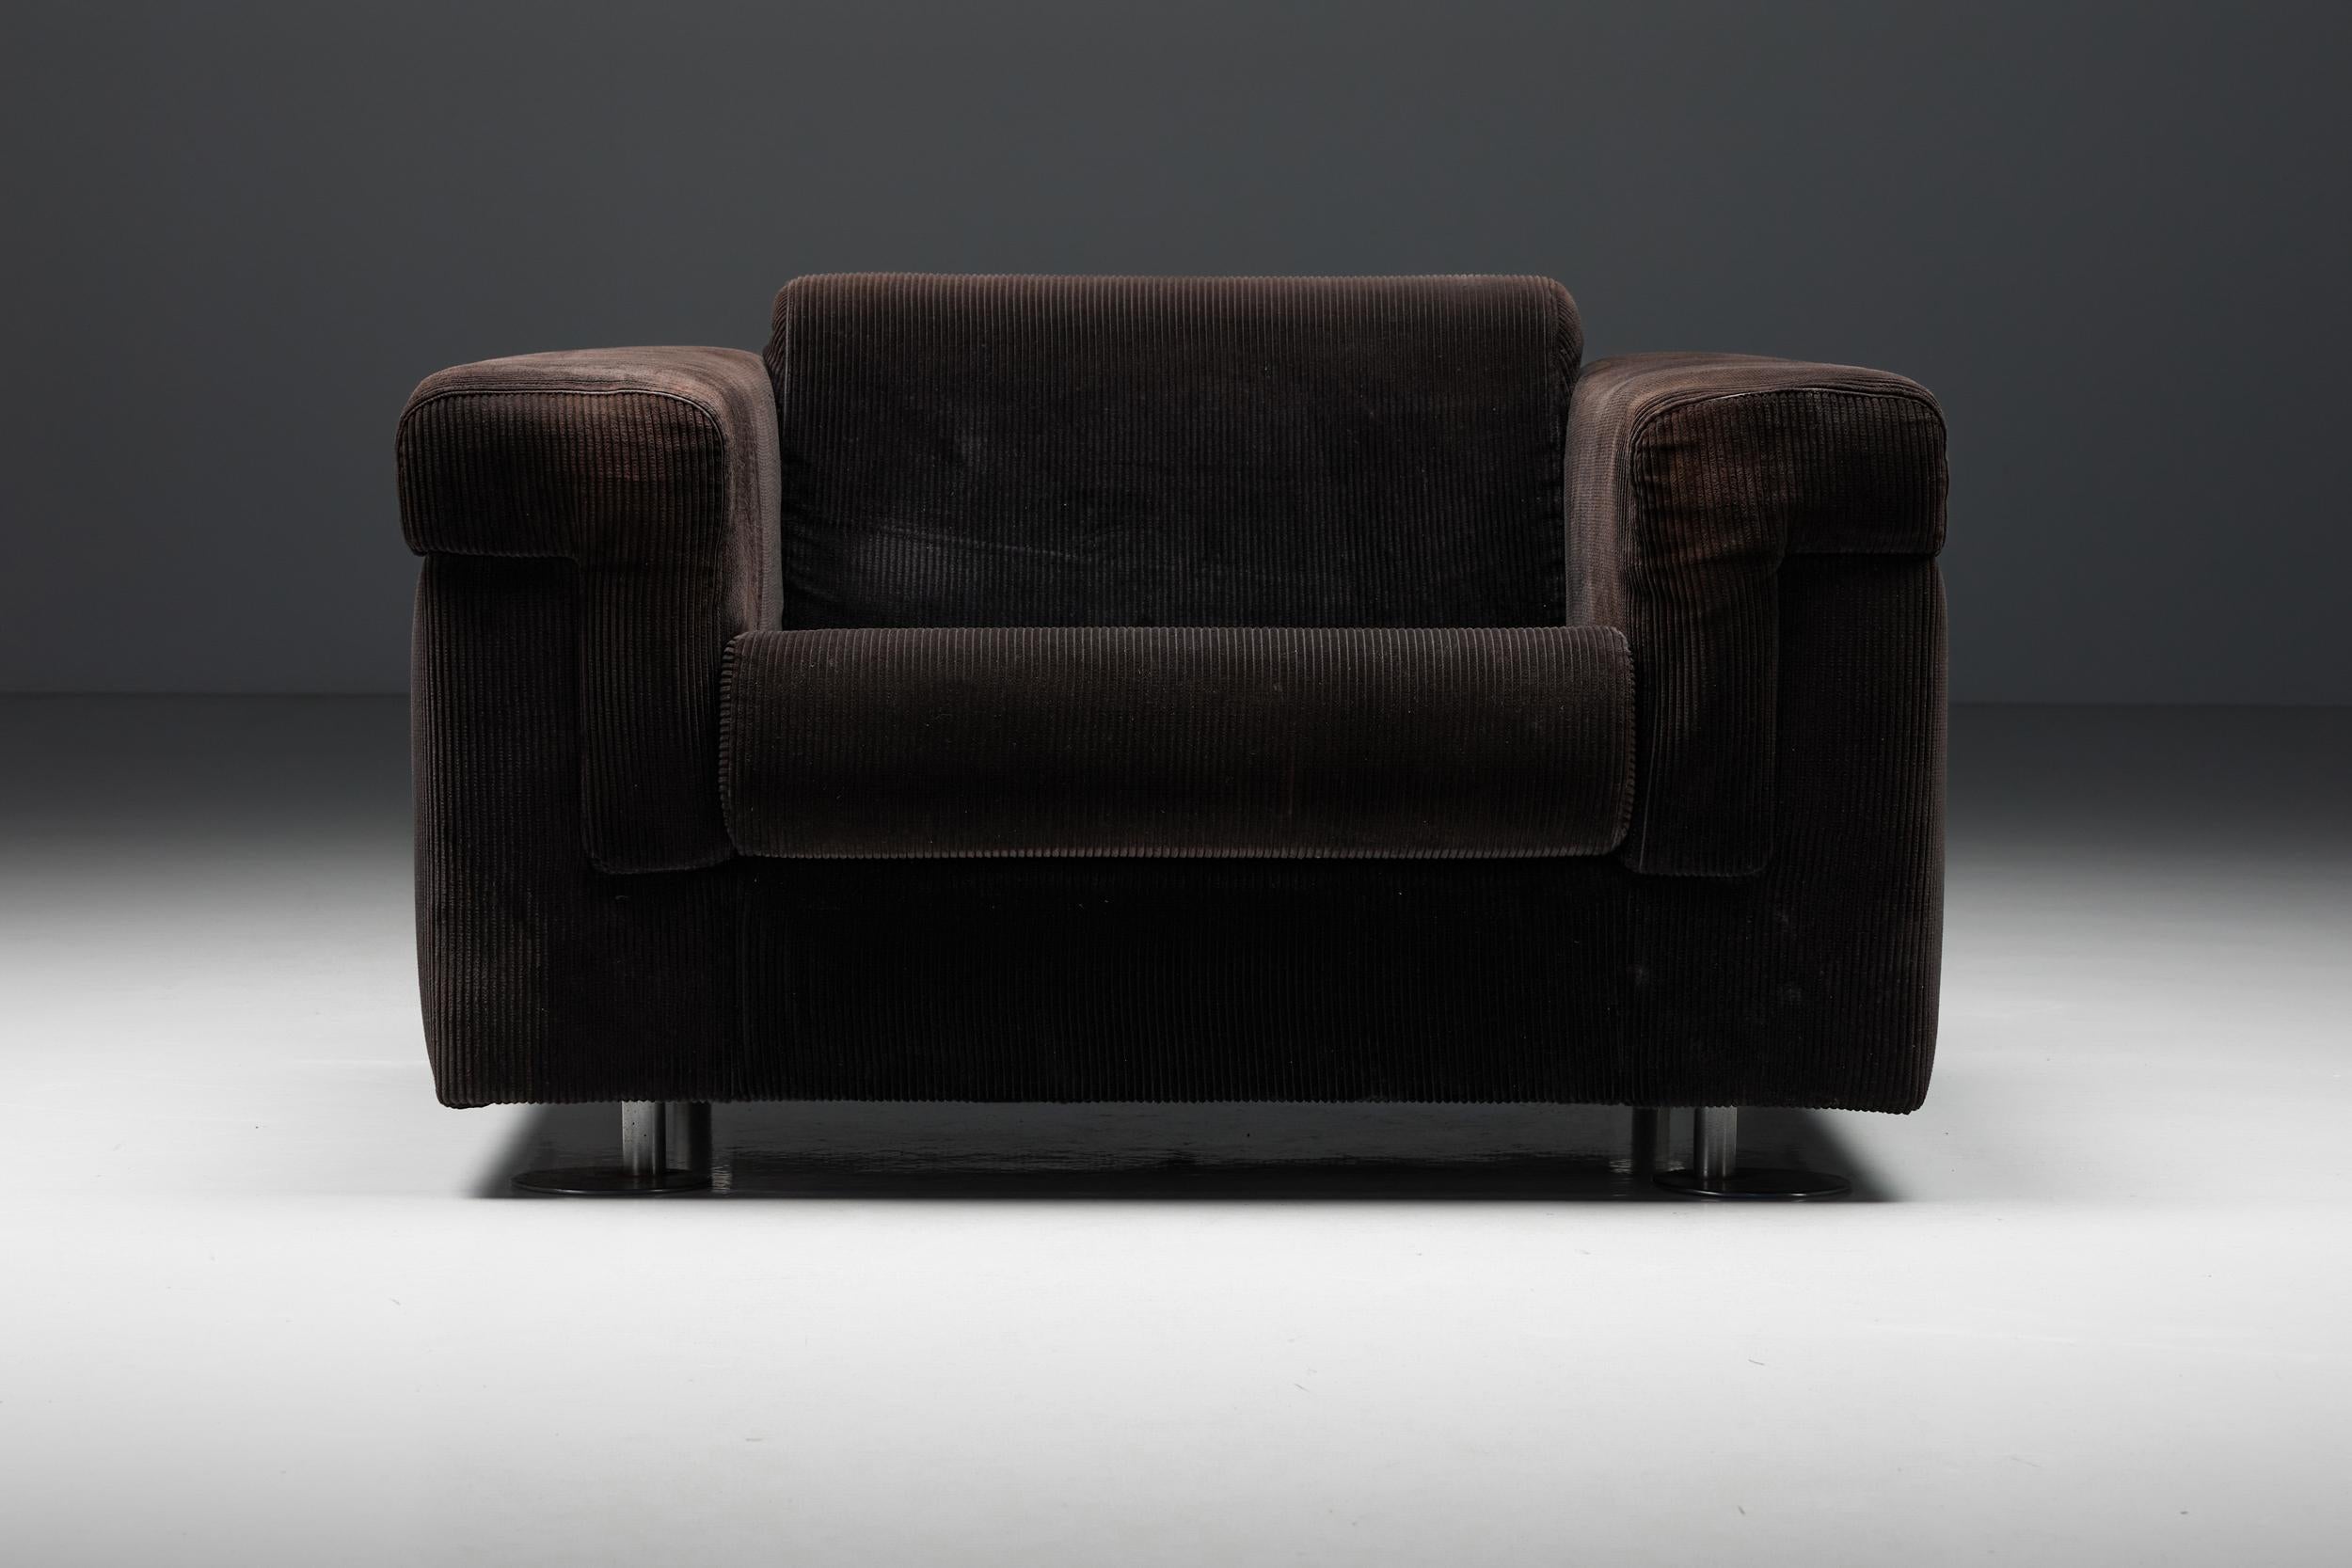 Mid-20th Century Italian Modern Lounge Chair by Borsani & Bonetti for Tecno, Velvet, 1966